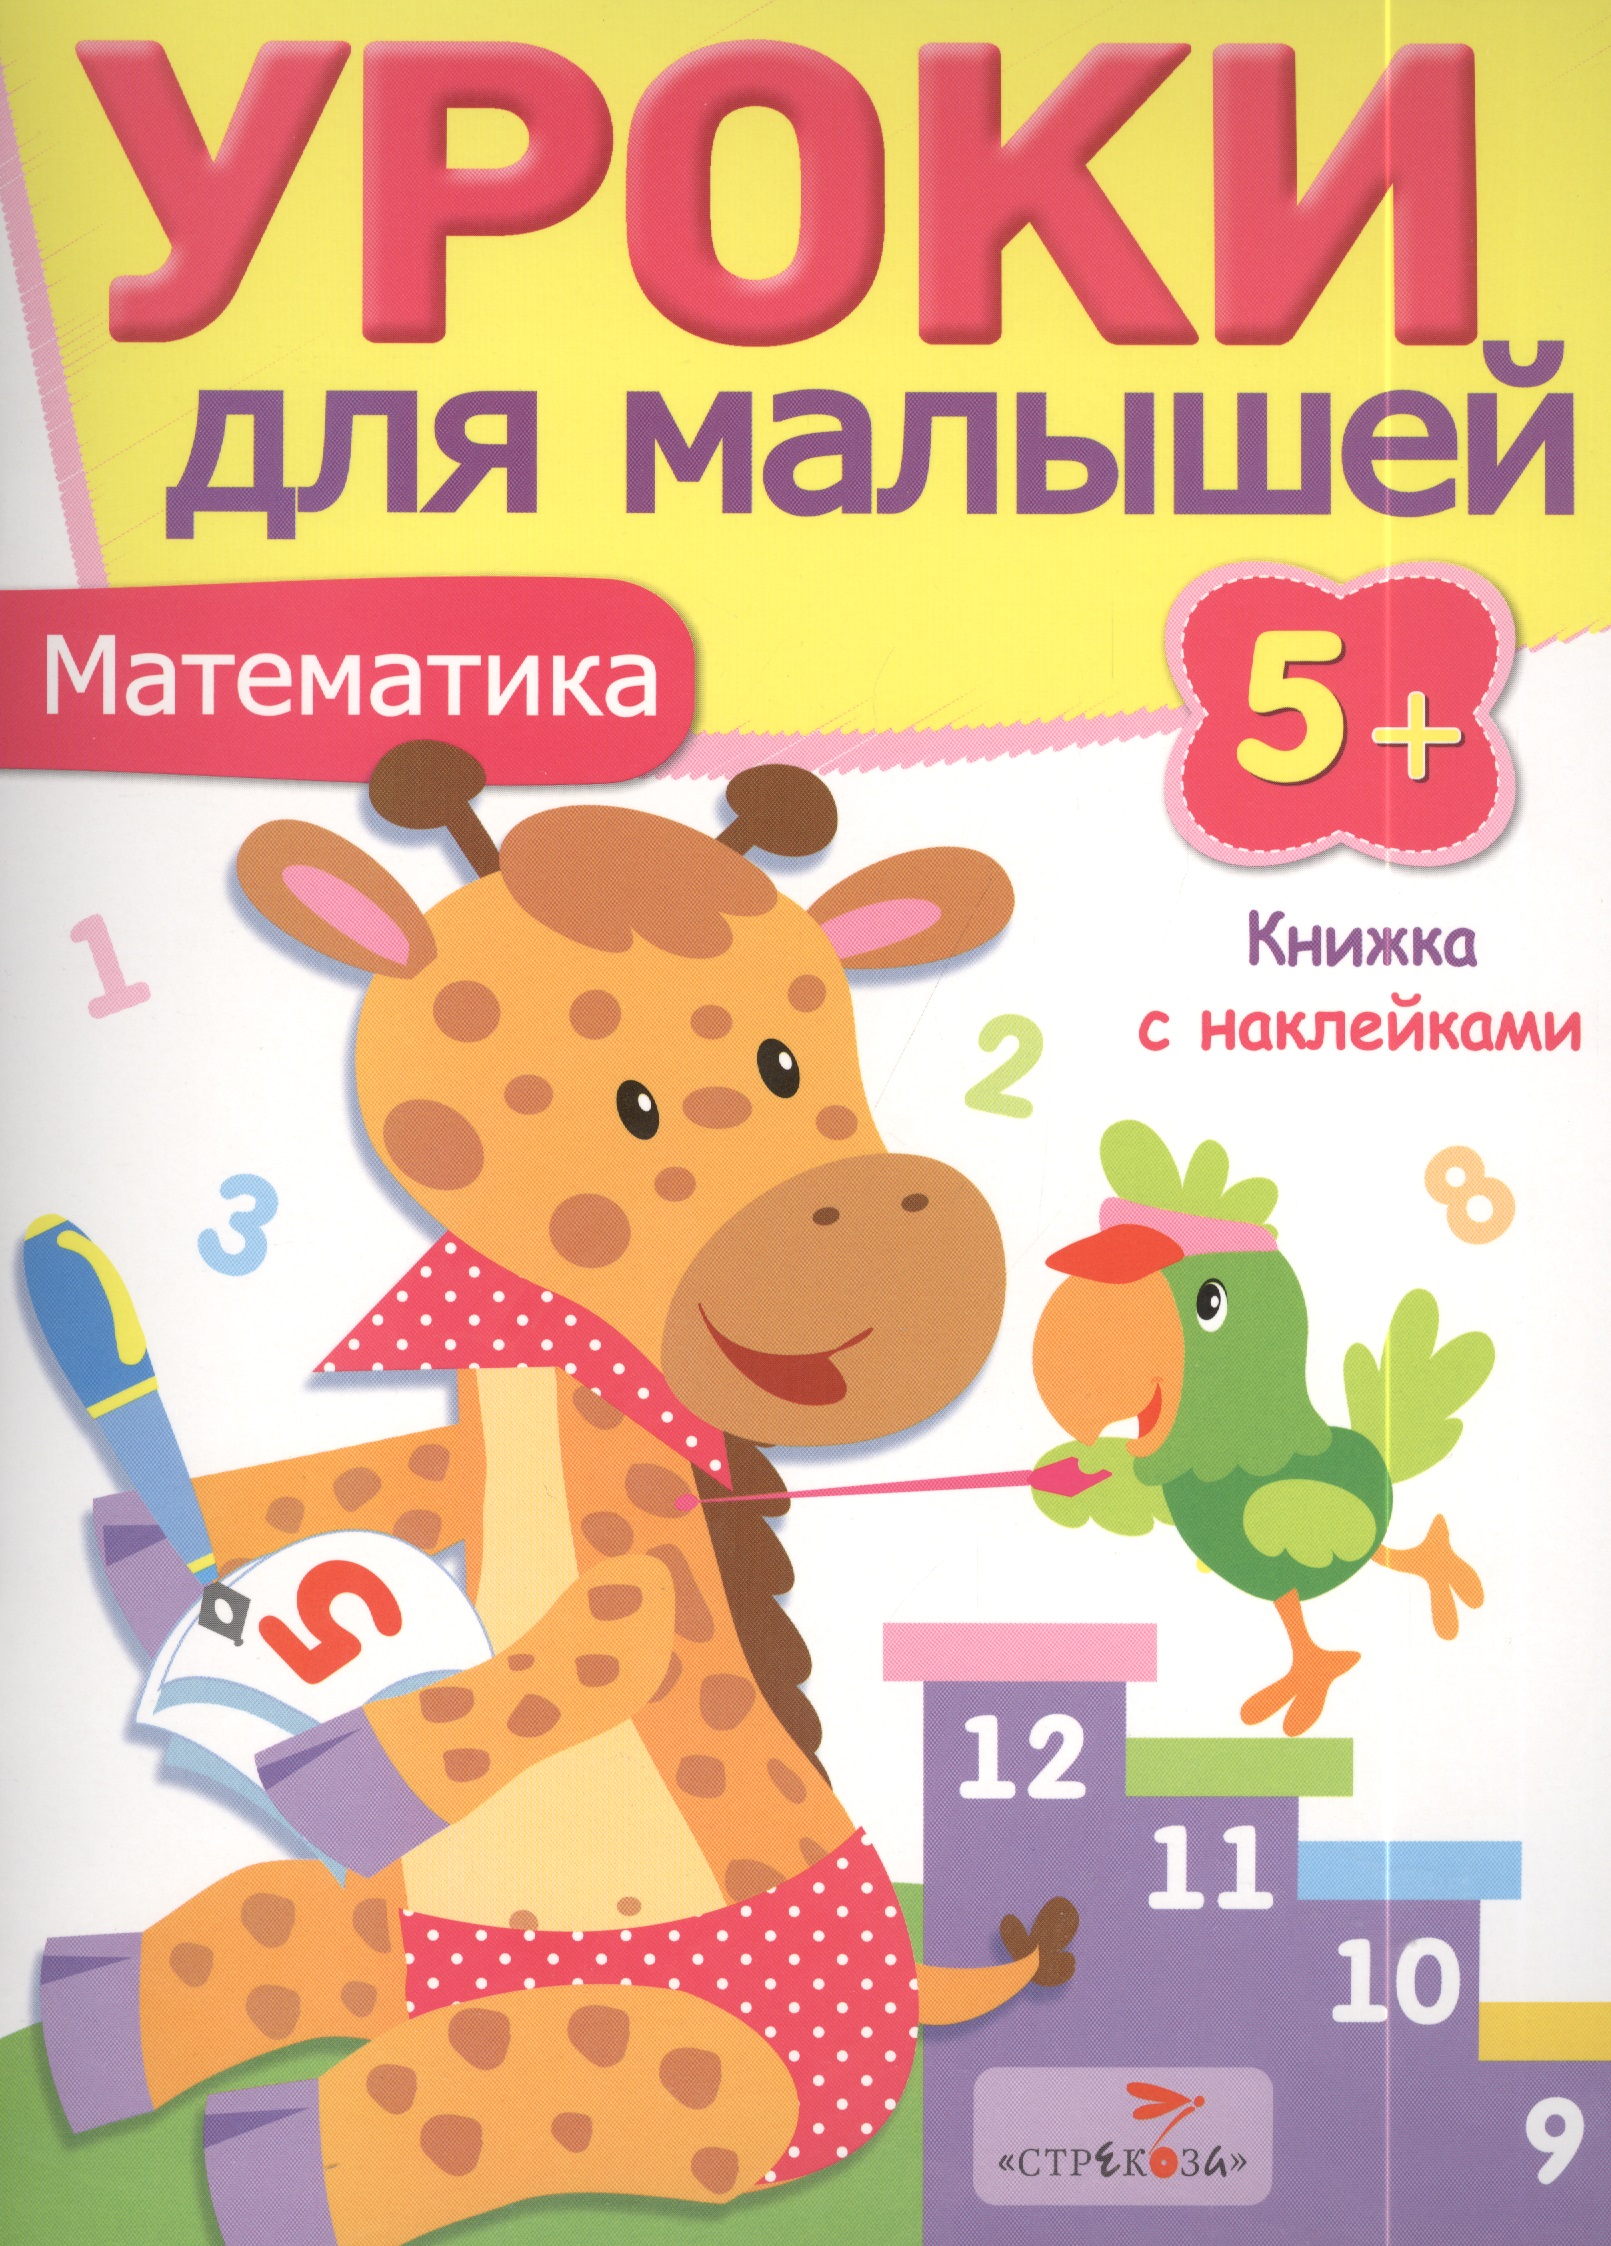 Попова И. Уроки для малышей 5+. Математика